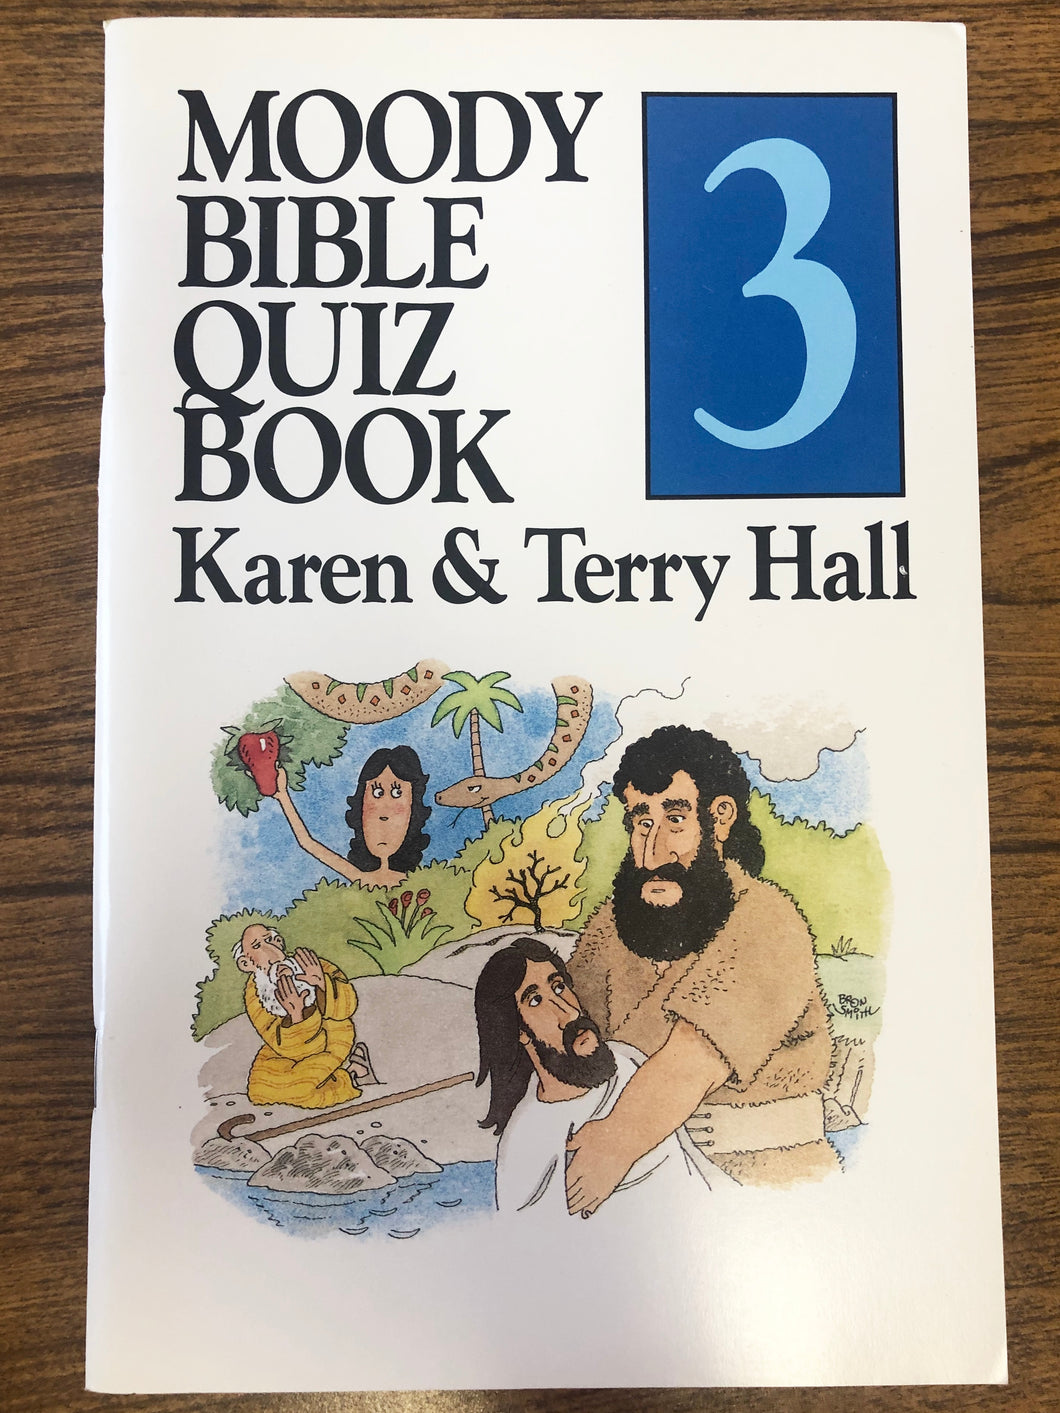 Moody Bible Quiz Book 3 by Karen & Terry Hall